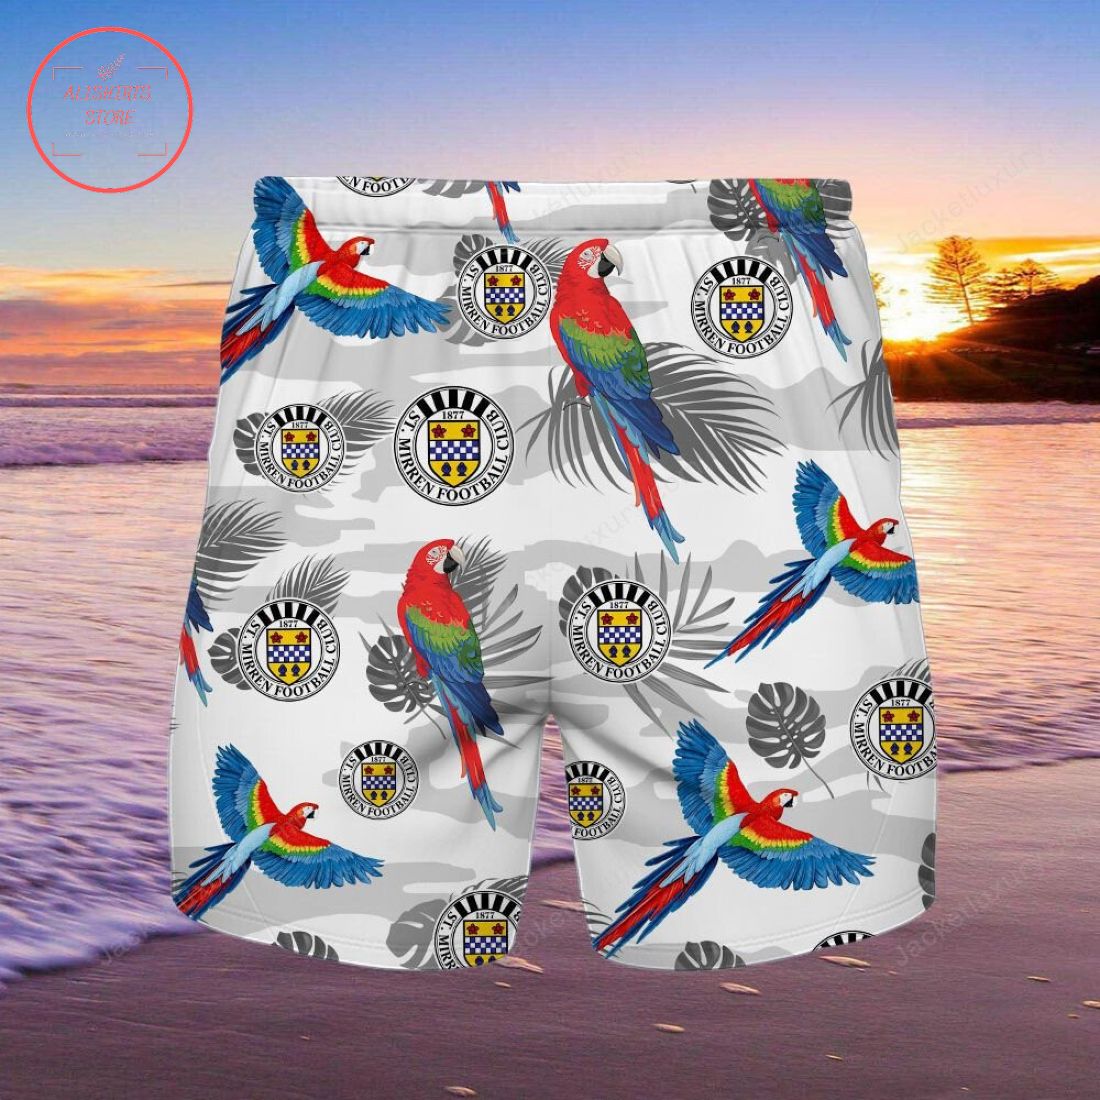 St Mirren FC Parrot Hawaiian Shirt and Beach Shorts